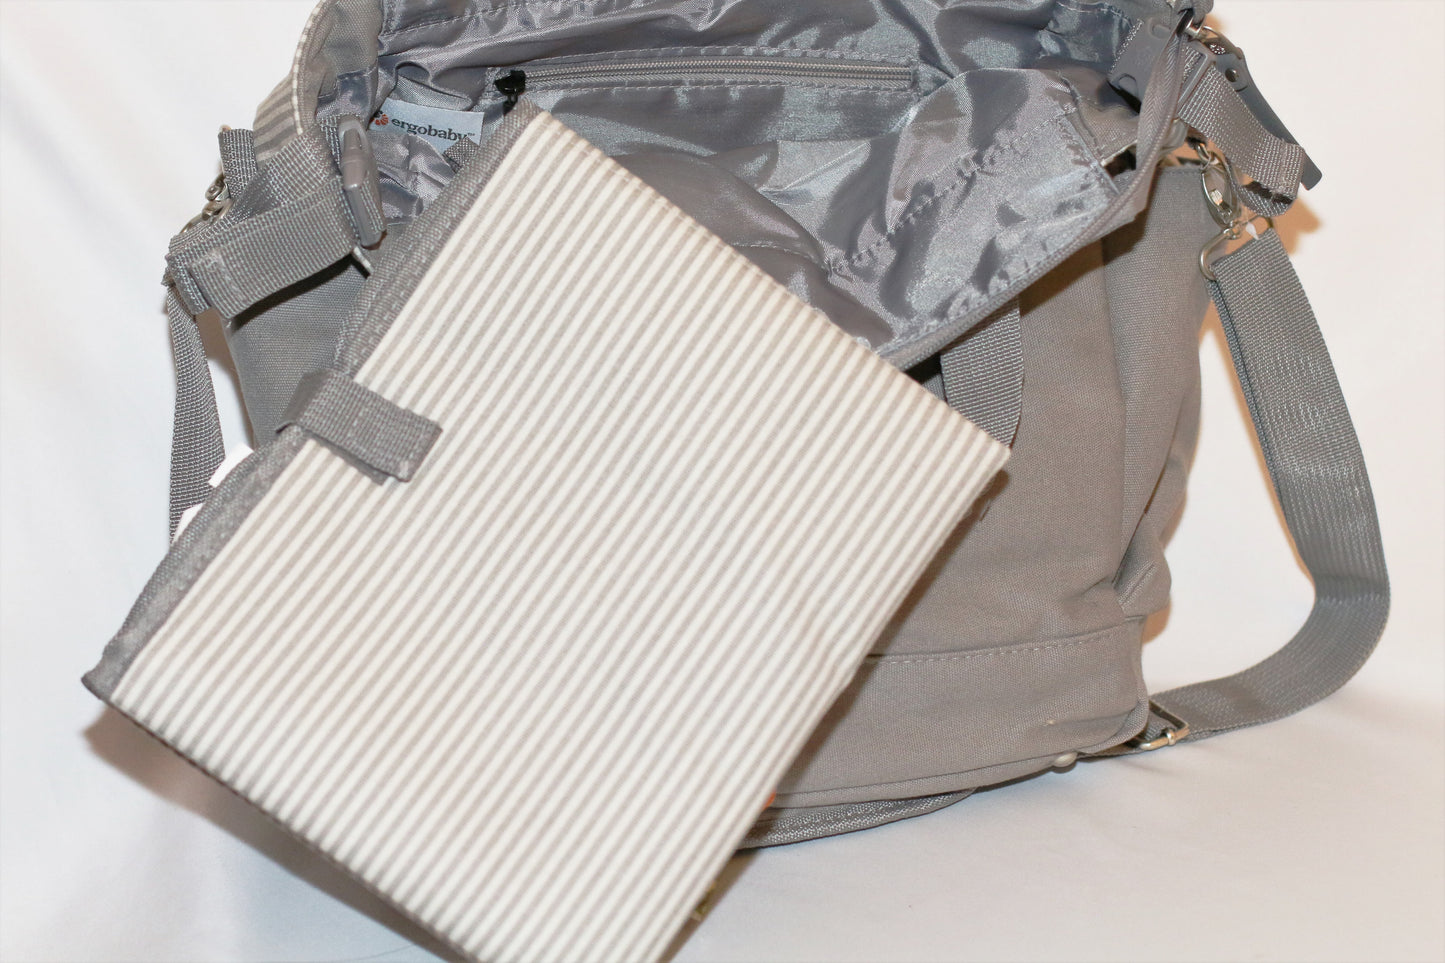 Ergobaby Striped Diaper Bag